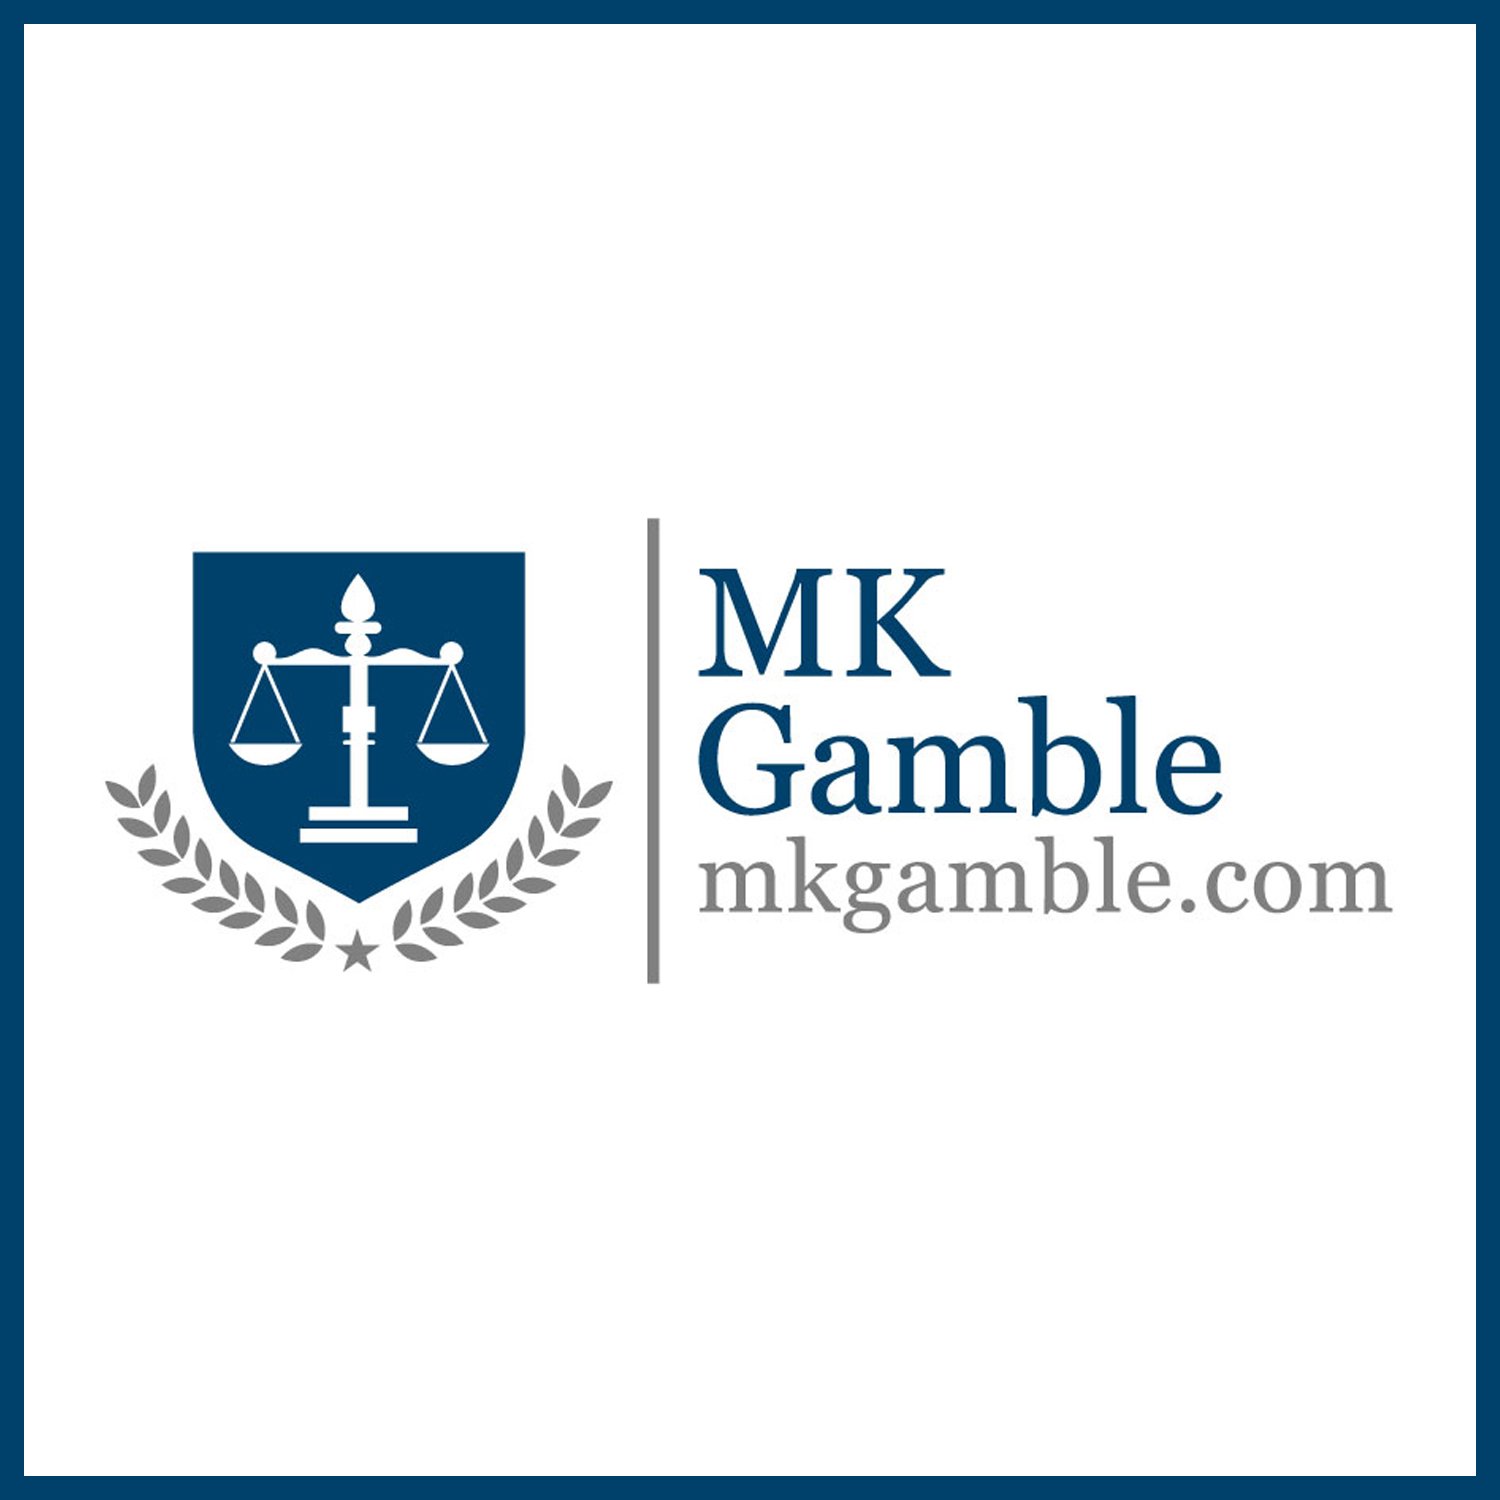 MK Gamble